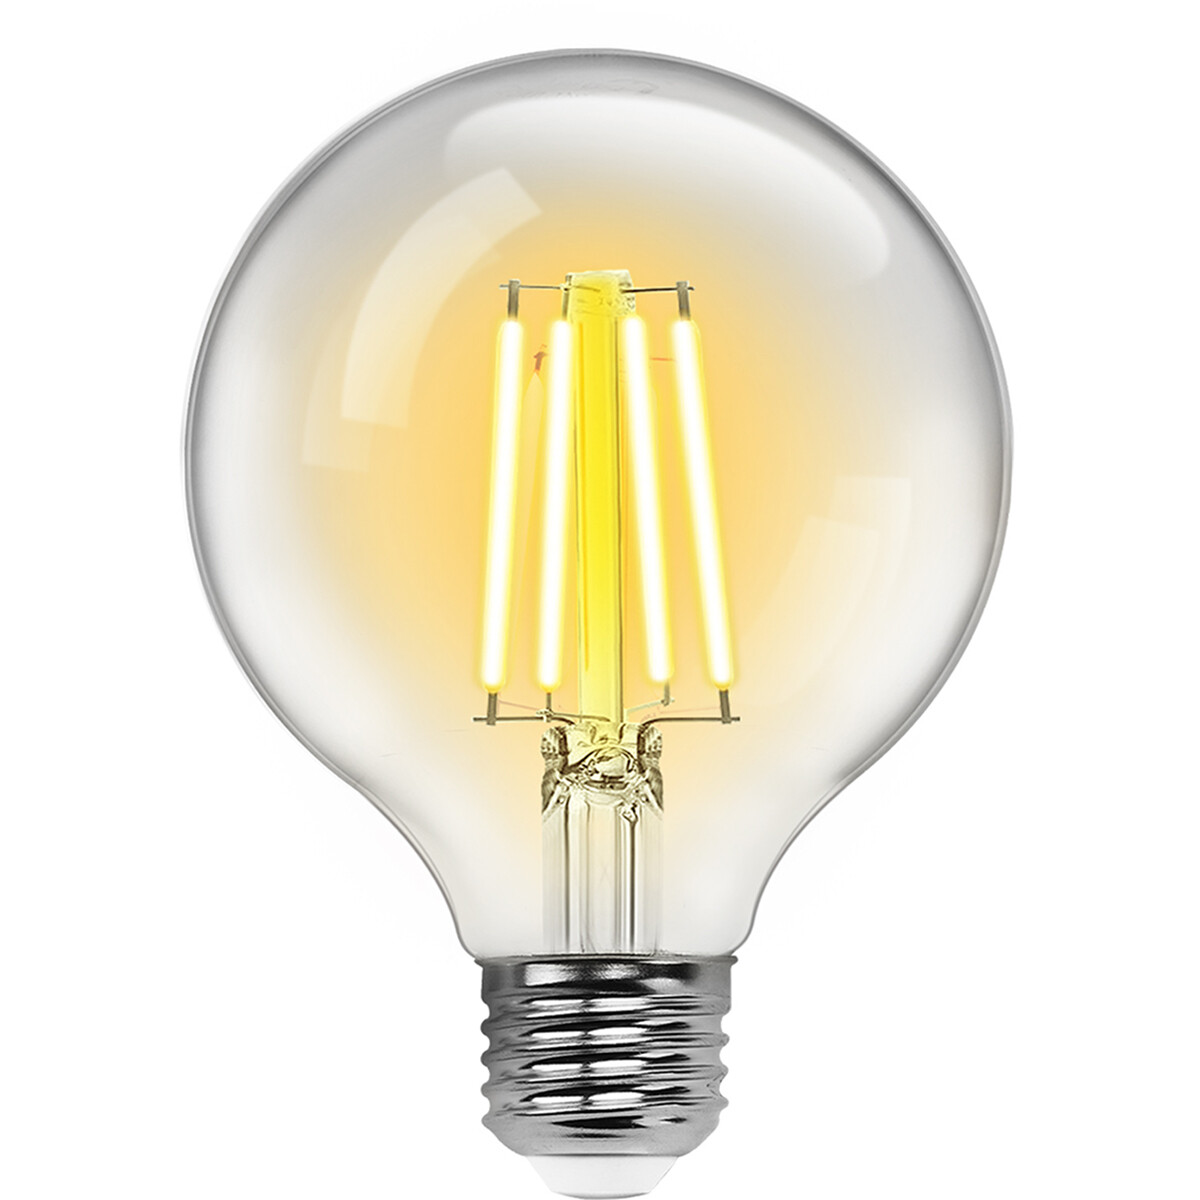 BES LED LED Lamp - Smart LED - Aigi Rixona - Bulb G95 - 6W - E27 Fitting - Slimme LED - Wifi LED + Bluetooth - Aanpasbare Kleur - Transparant Helder - Glas